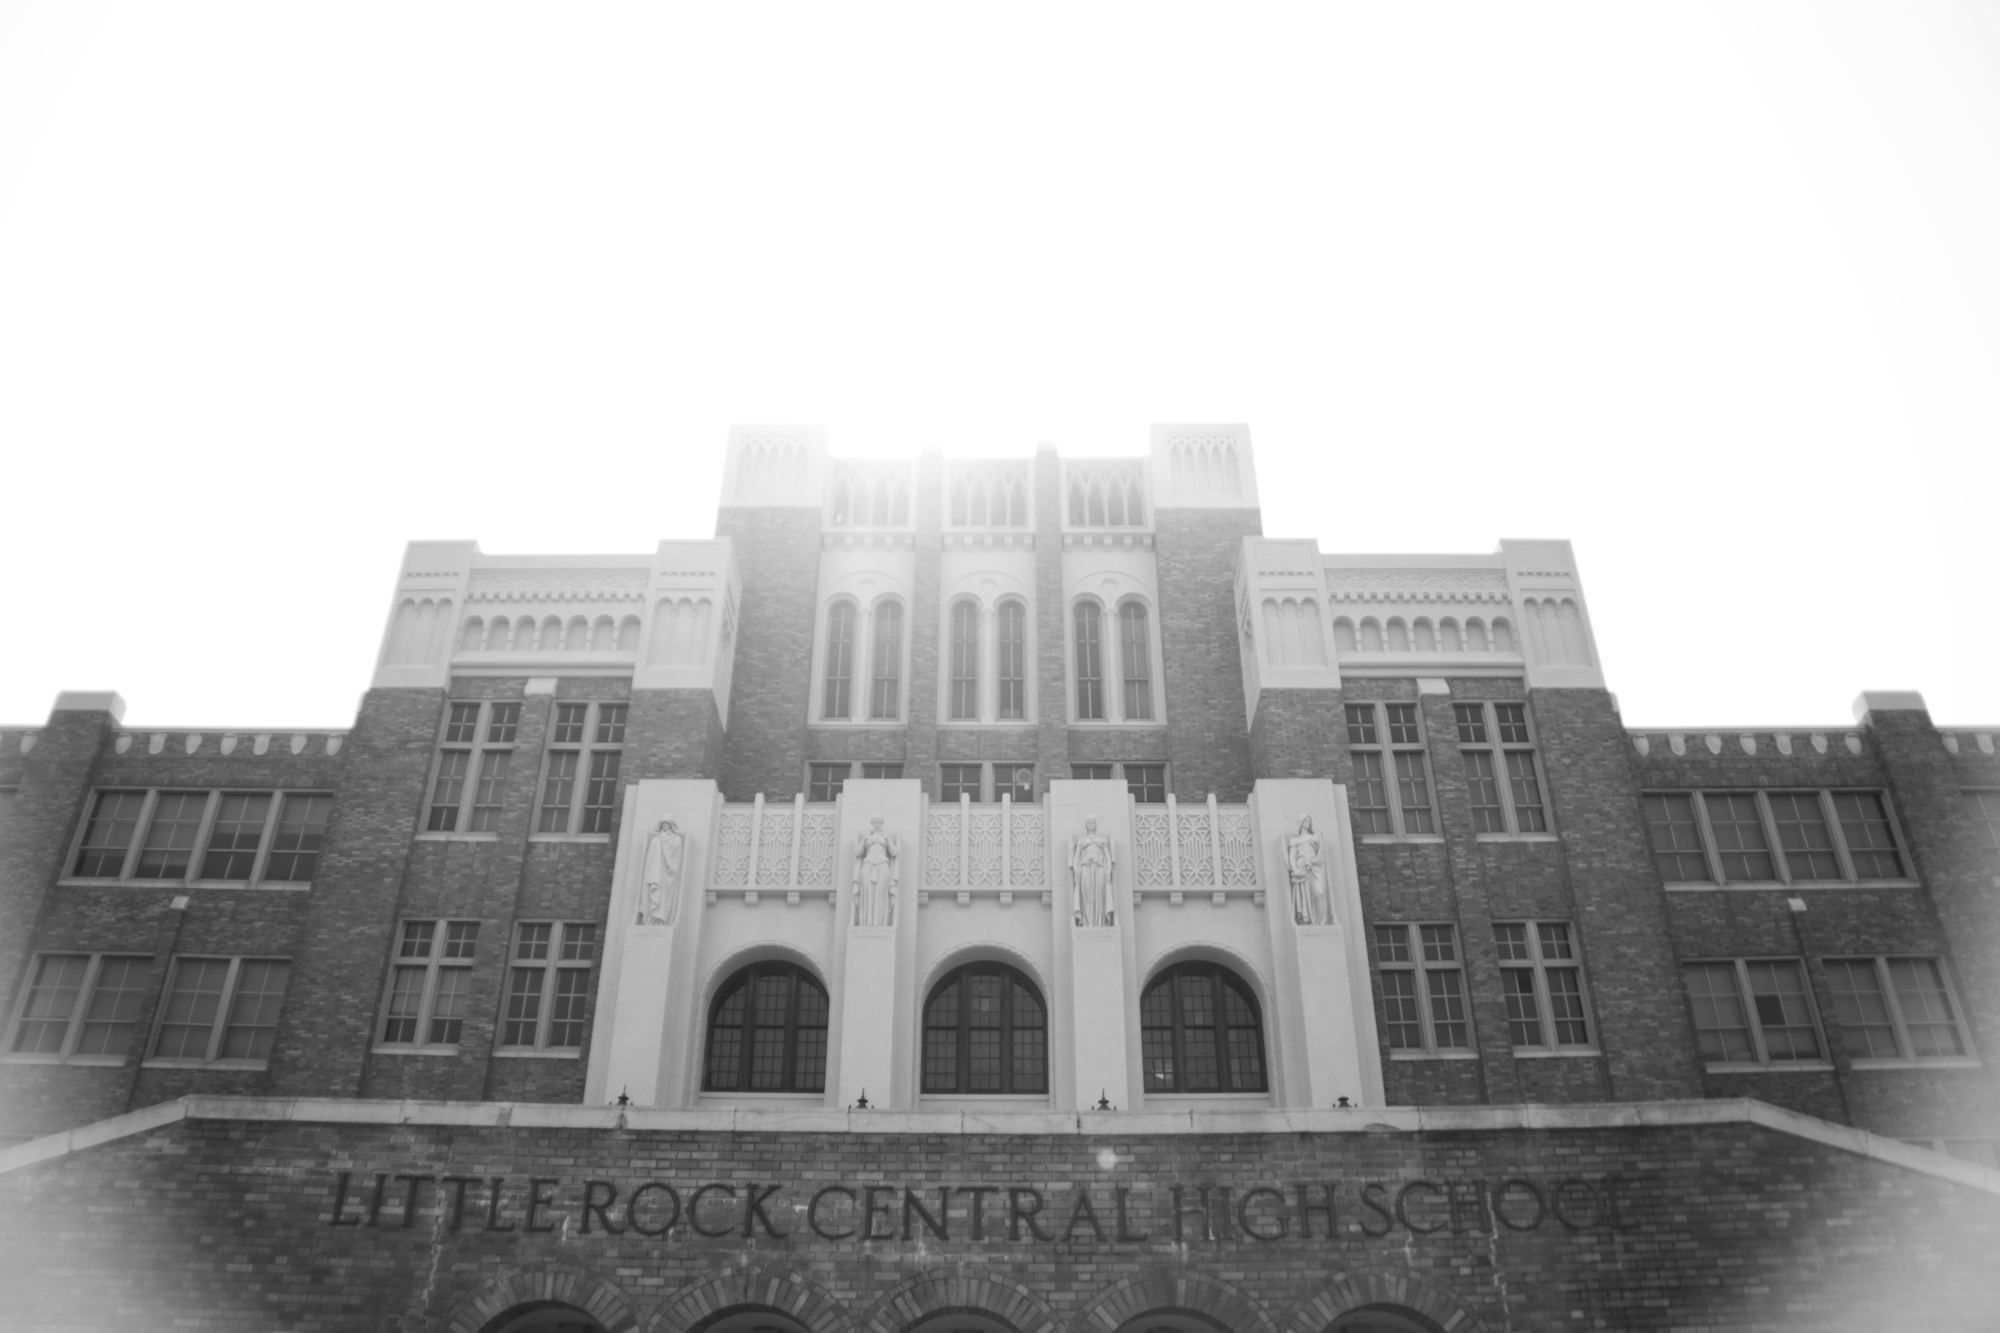  Little Rock Central High School, Little Rock, Arkansas 